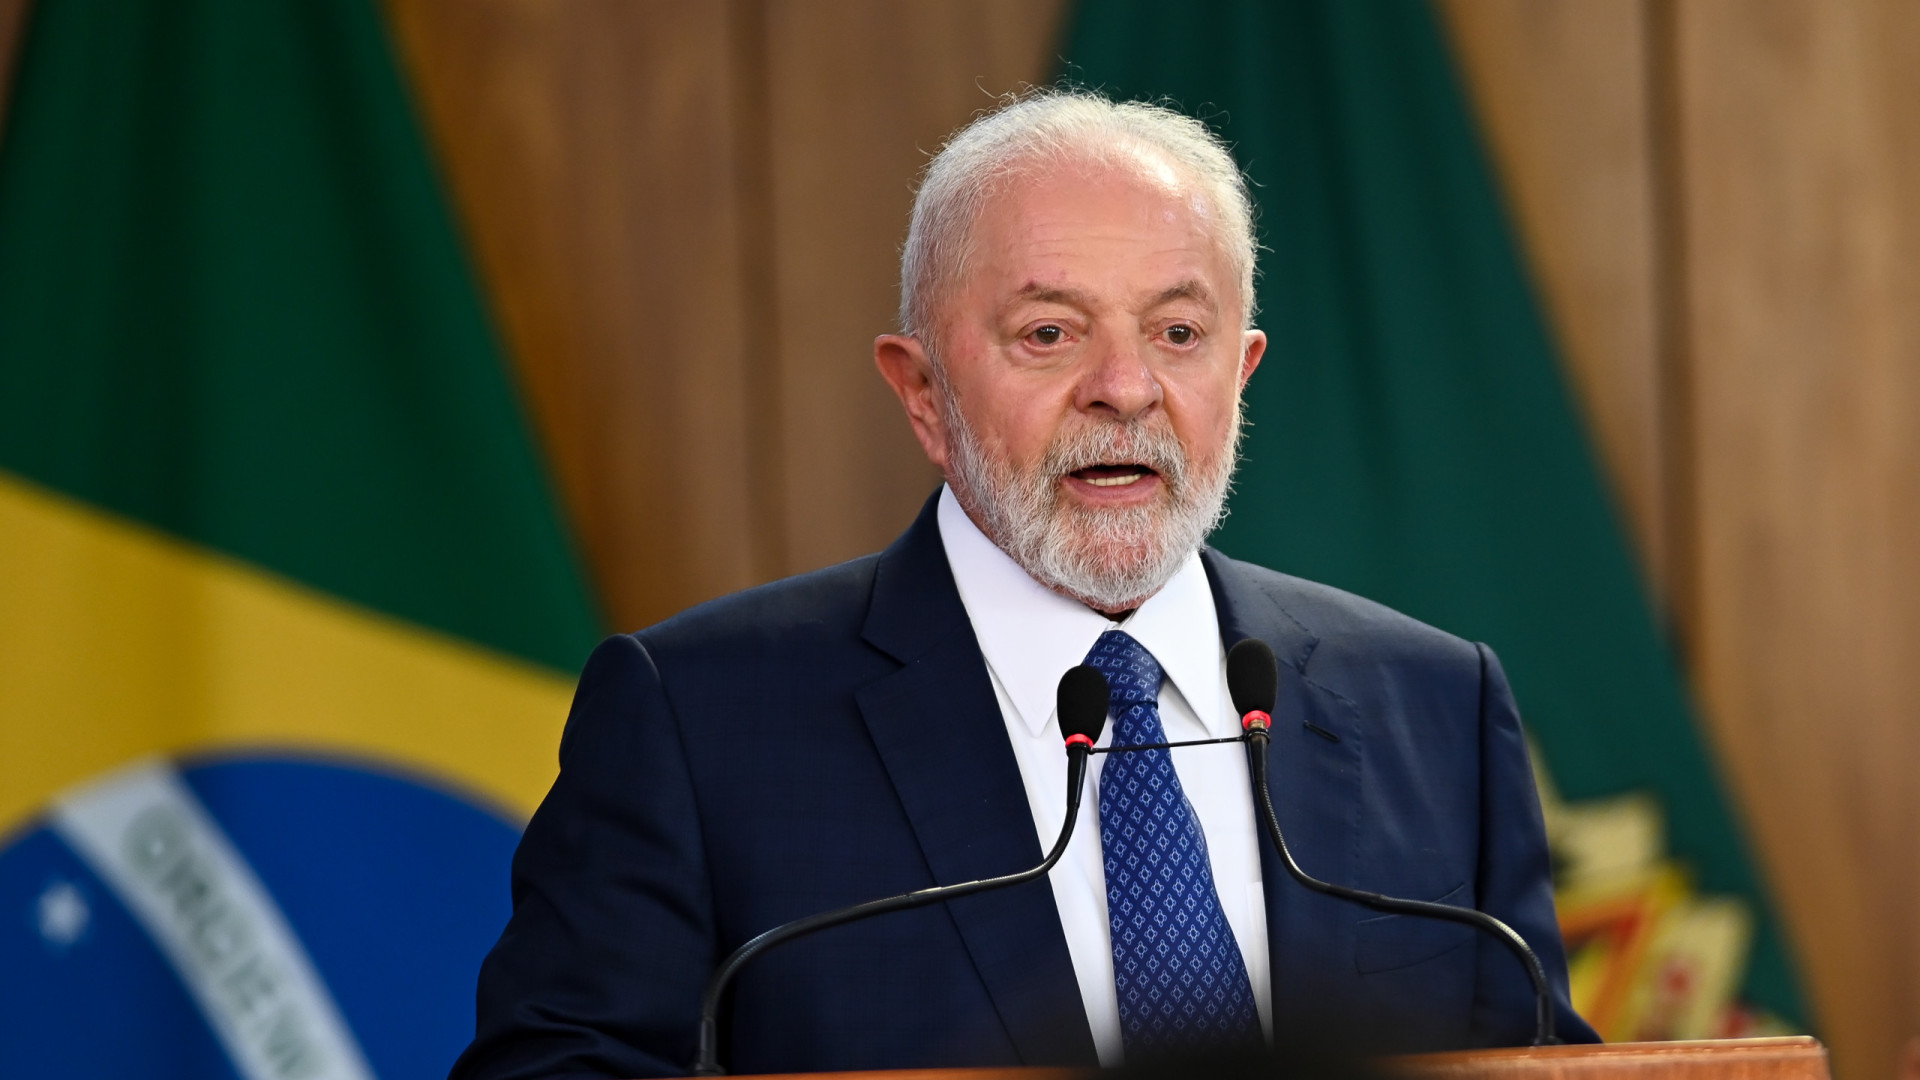 Em indulto de Natal, Lula exclui condenados por atos golpistas e chefes de facções